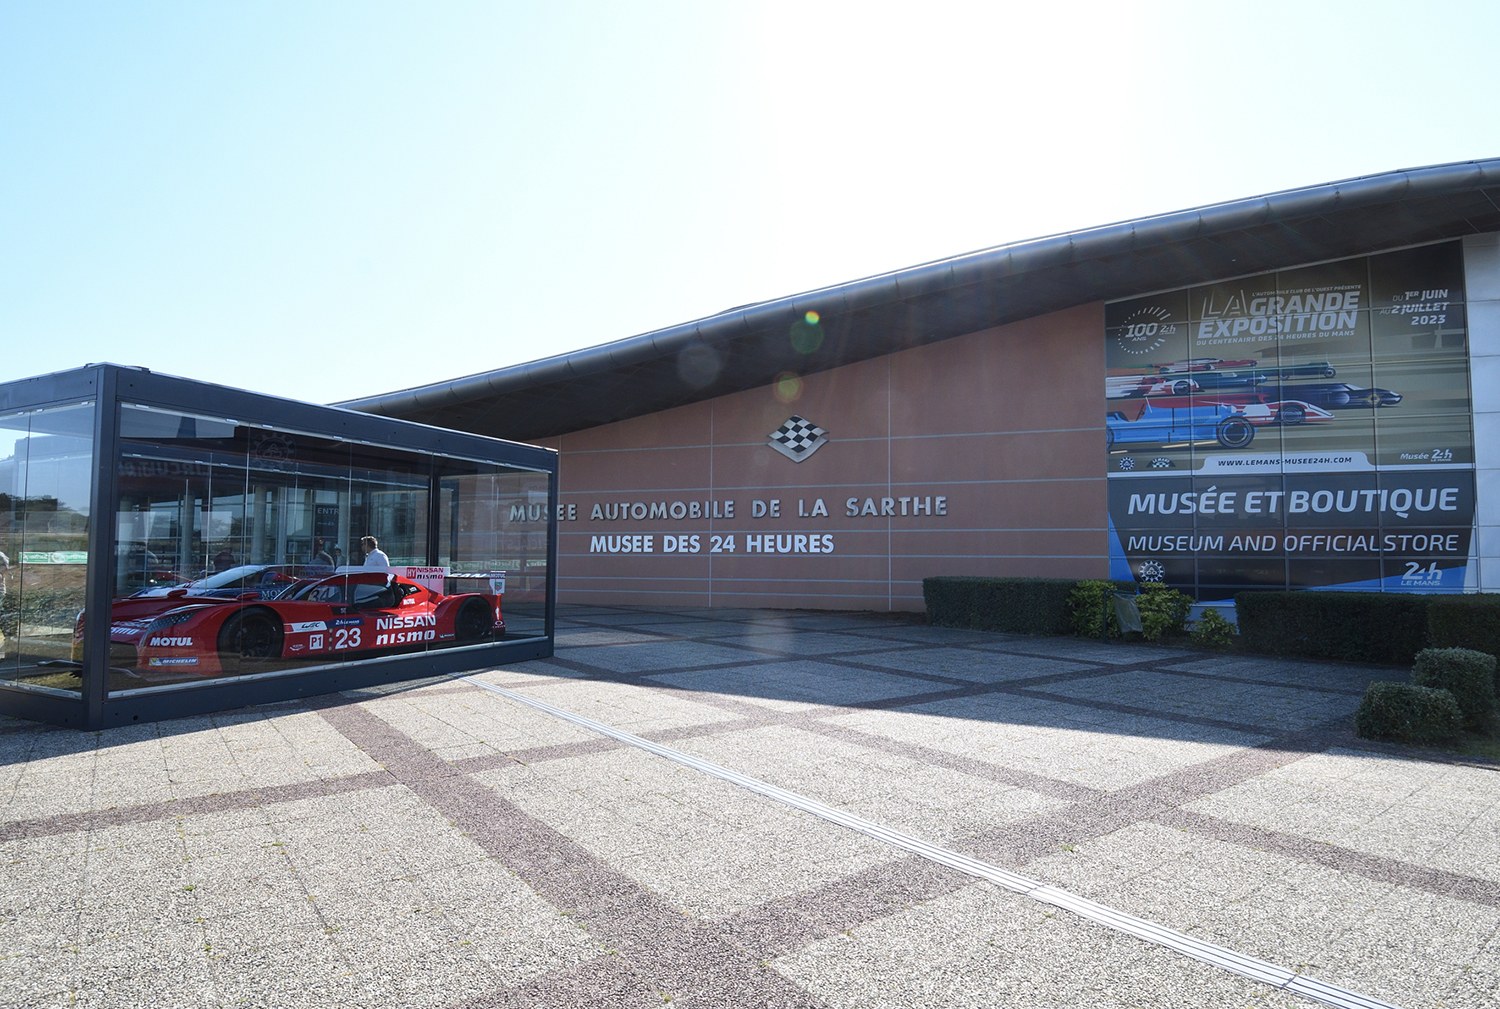 ル・マン24時間レース100周年を祝した参戦車両81台の記念展示がまるで夢のような空間